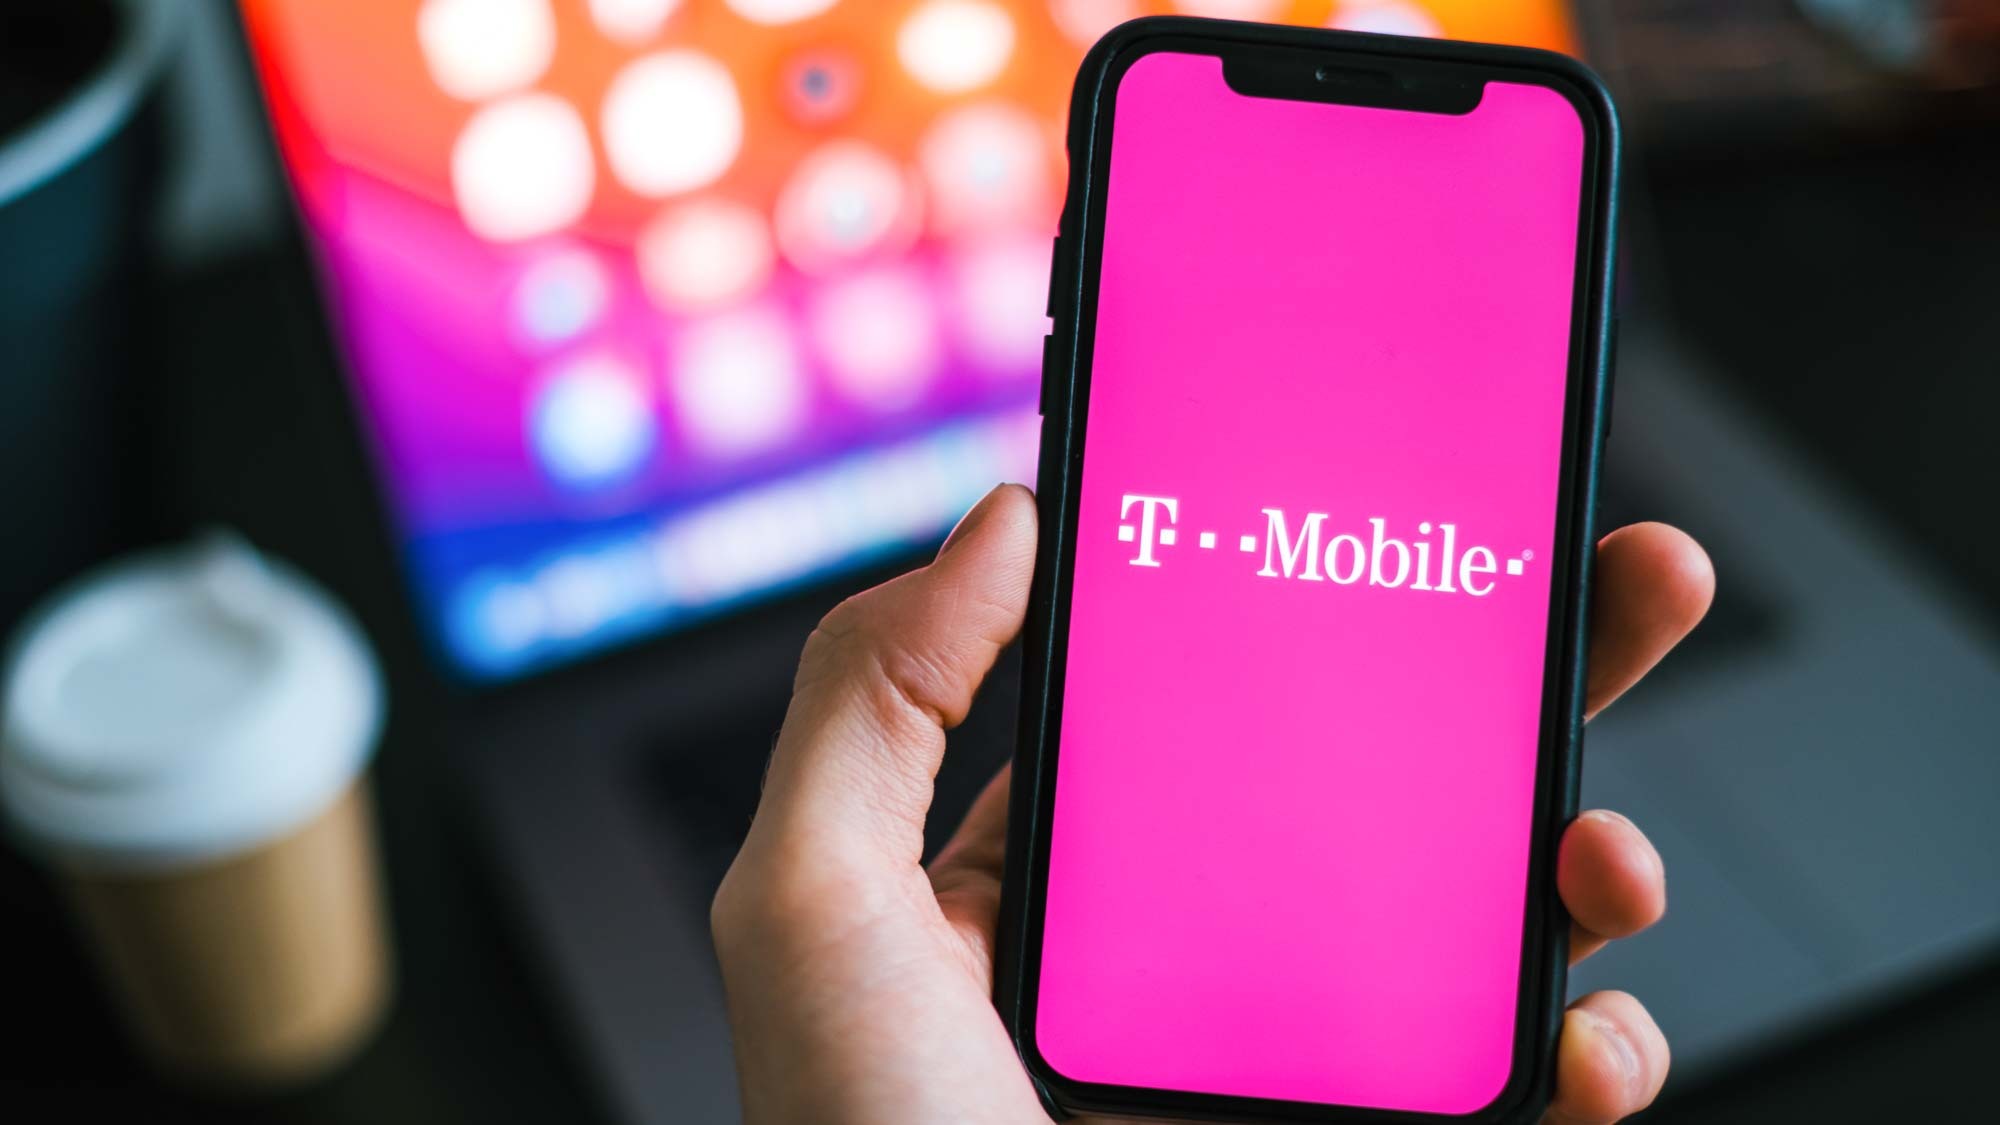 Une image montrant un iPhone avec le logo T-Mobile